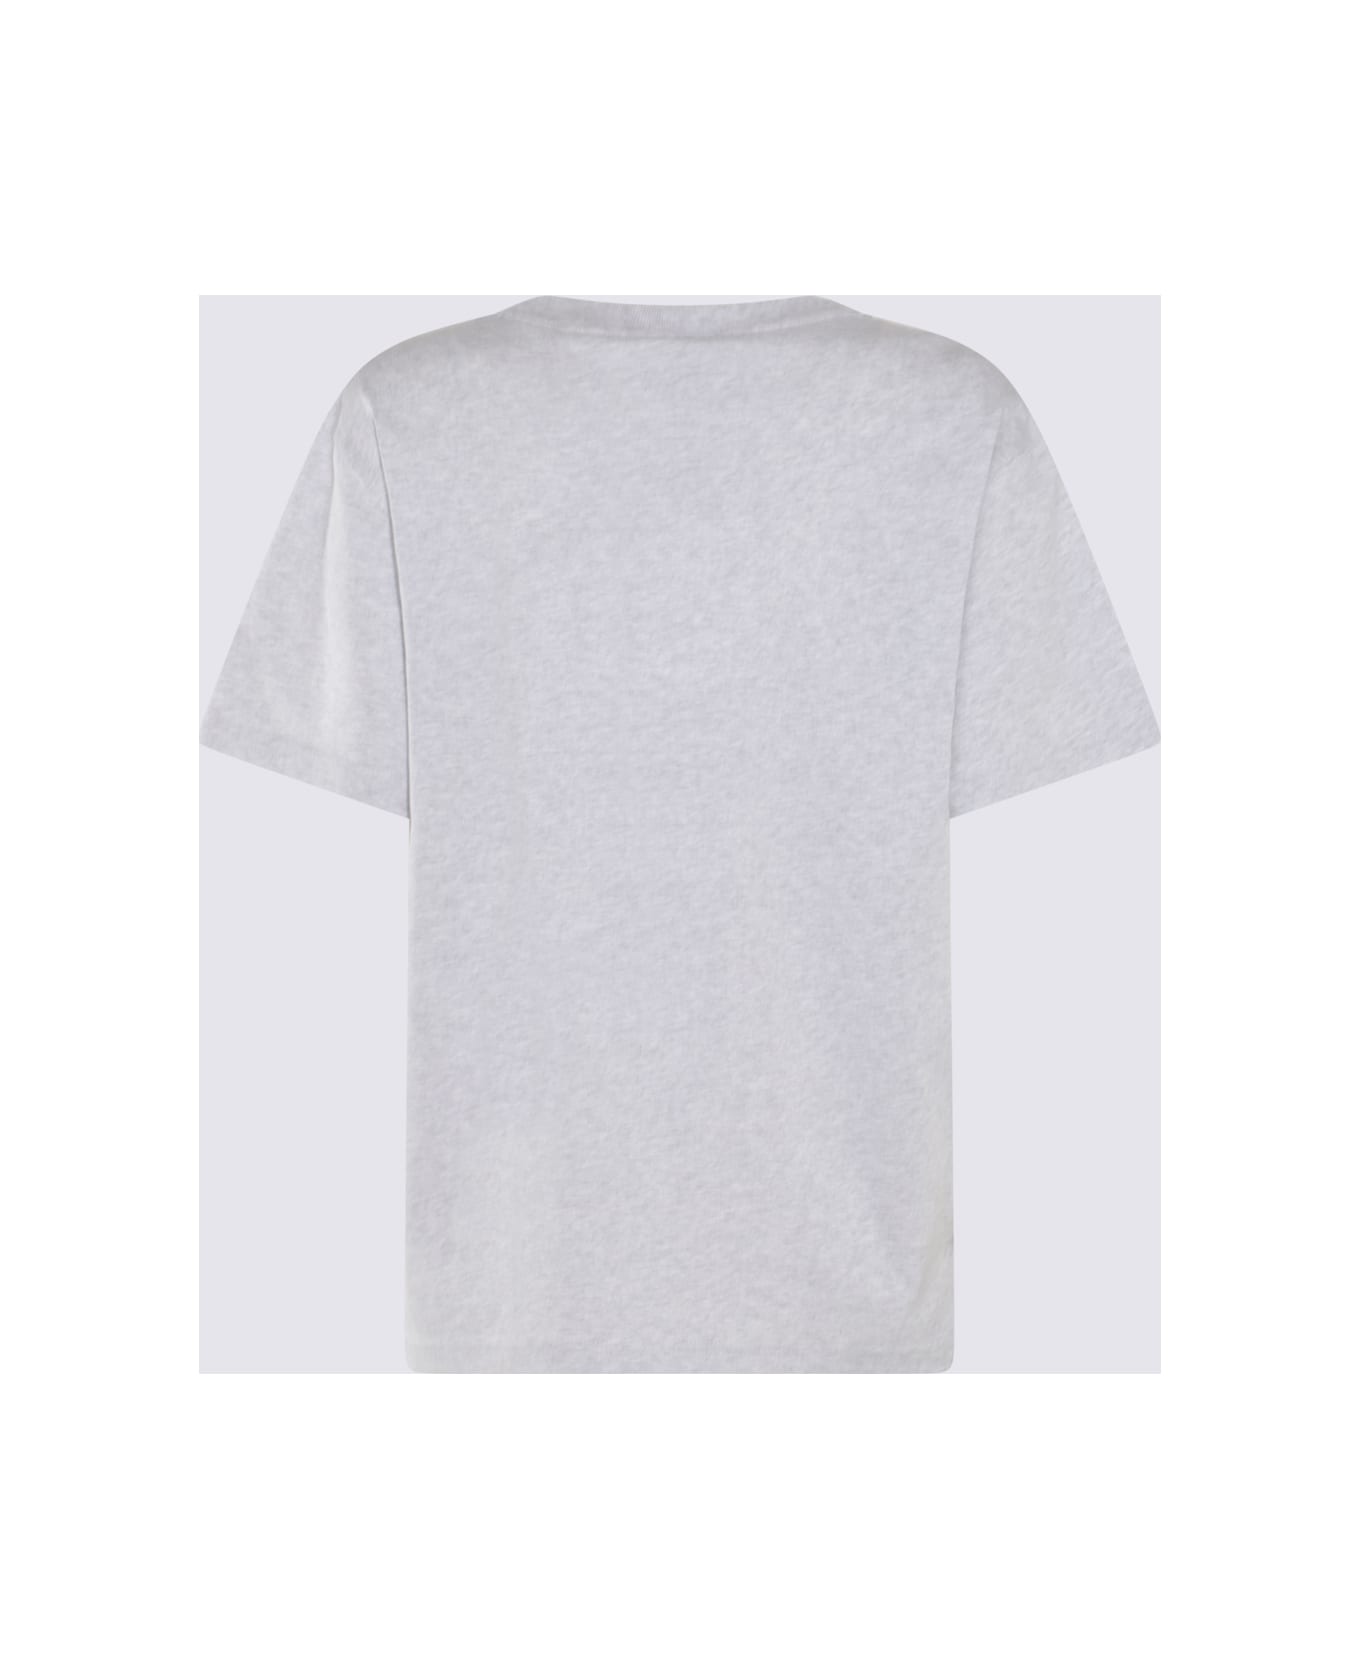 Alexander Wang Light Grey Cotton T-shirt - LIGHT HEATHER GREY